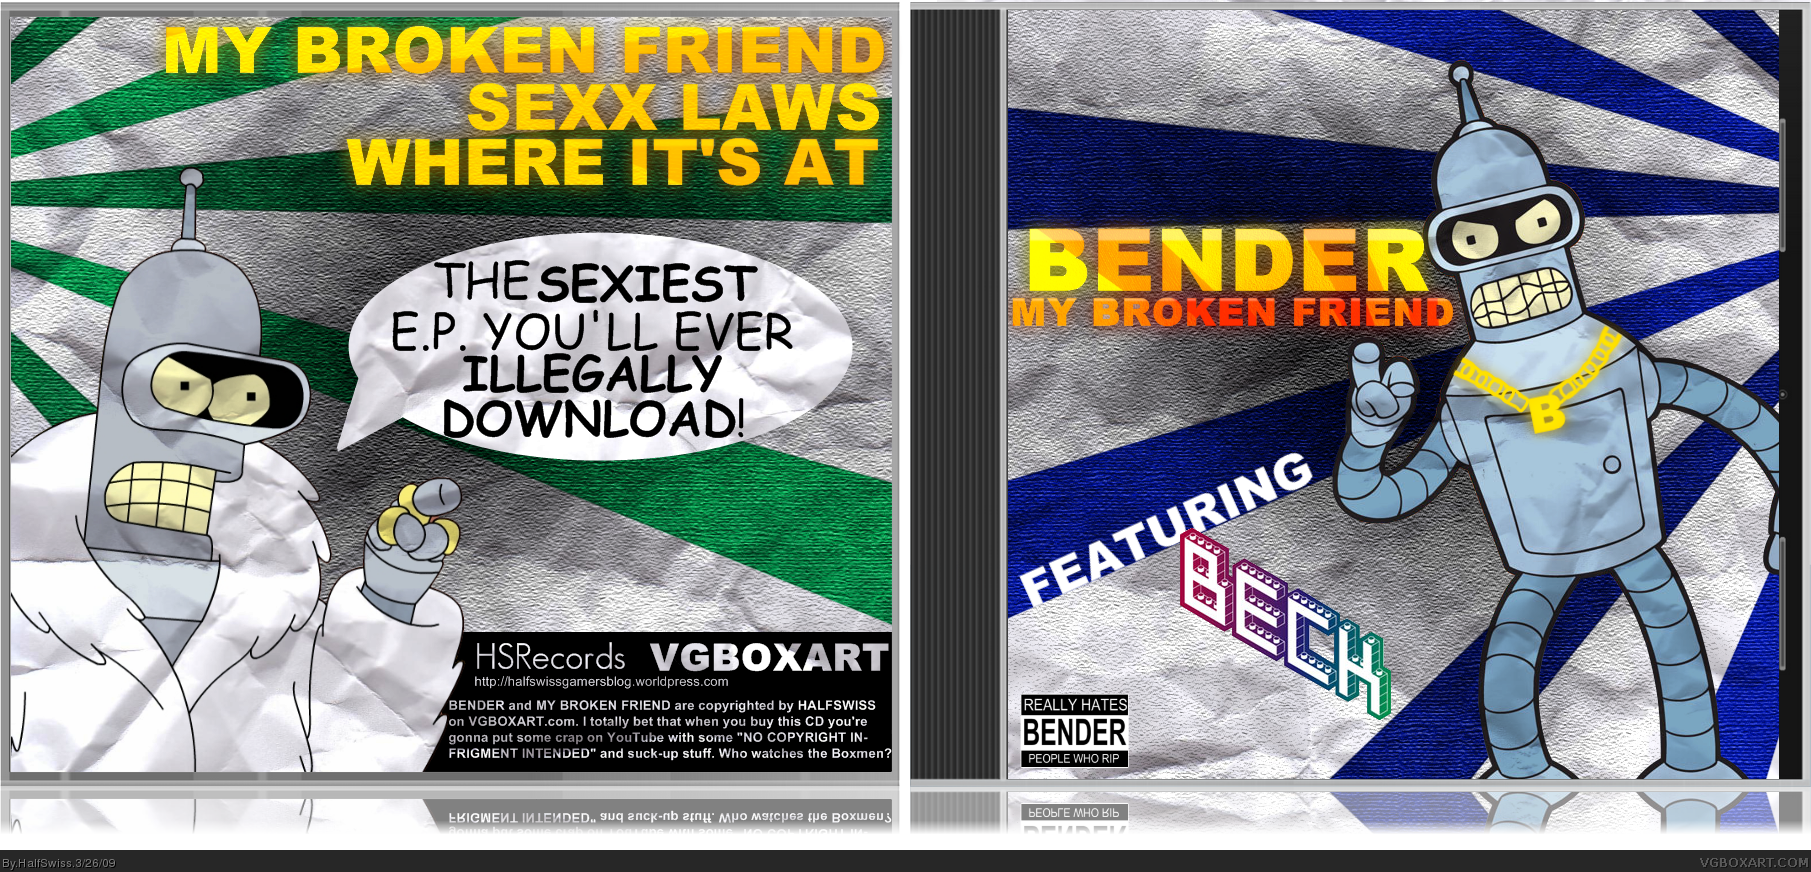 "My Broken Friend" - Bender feat. Beck box cover